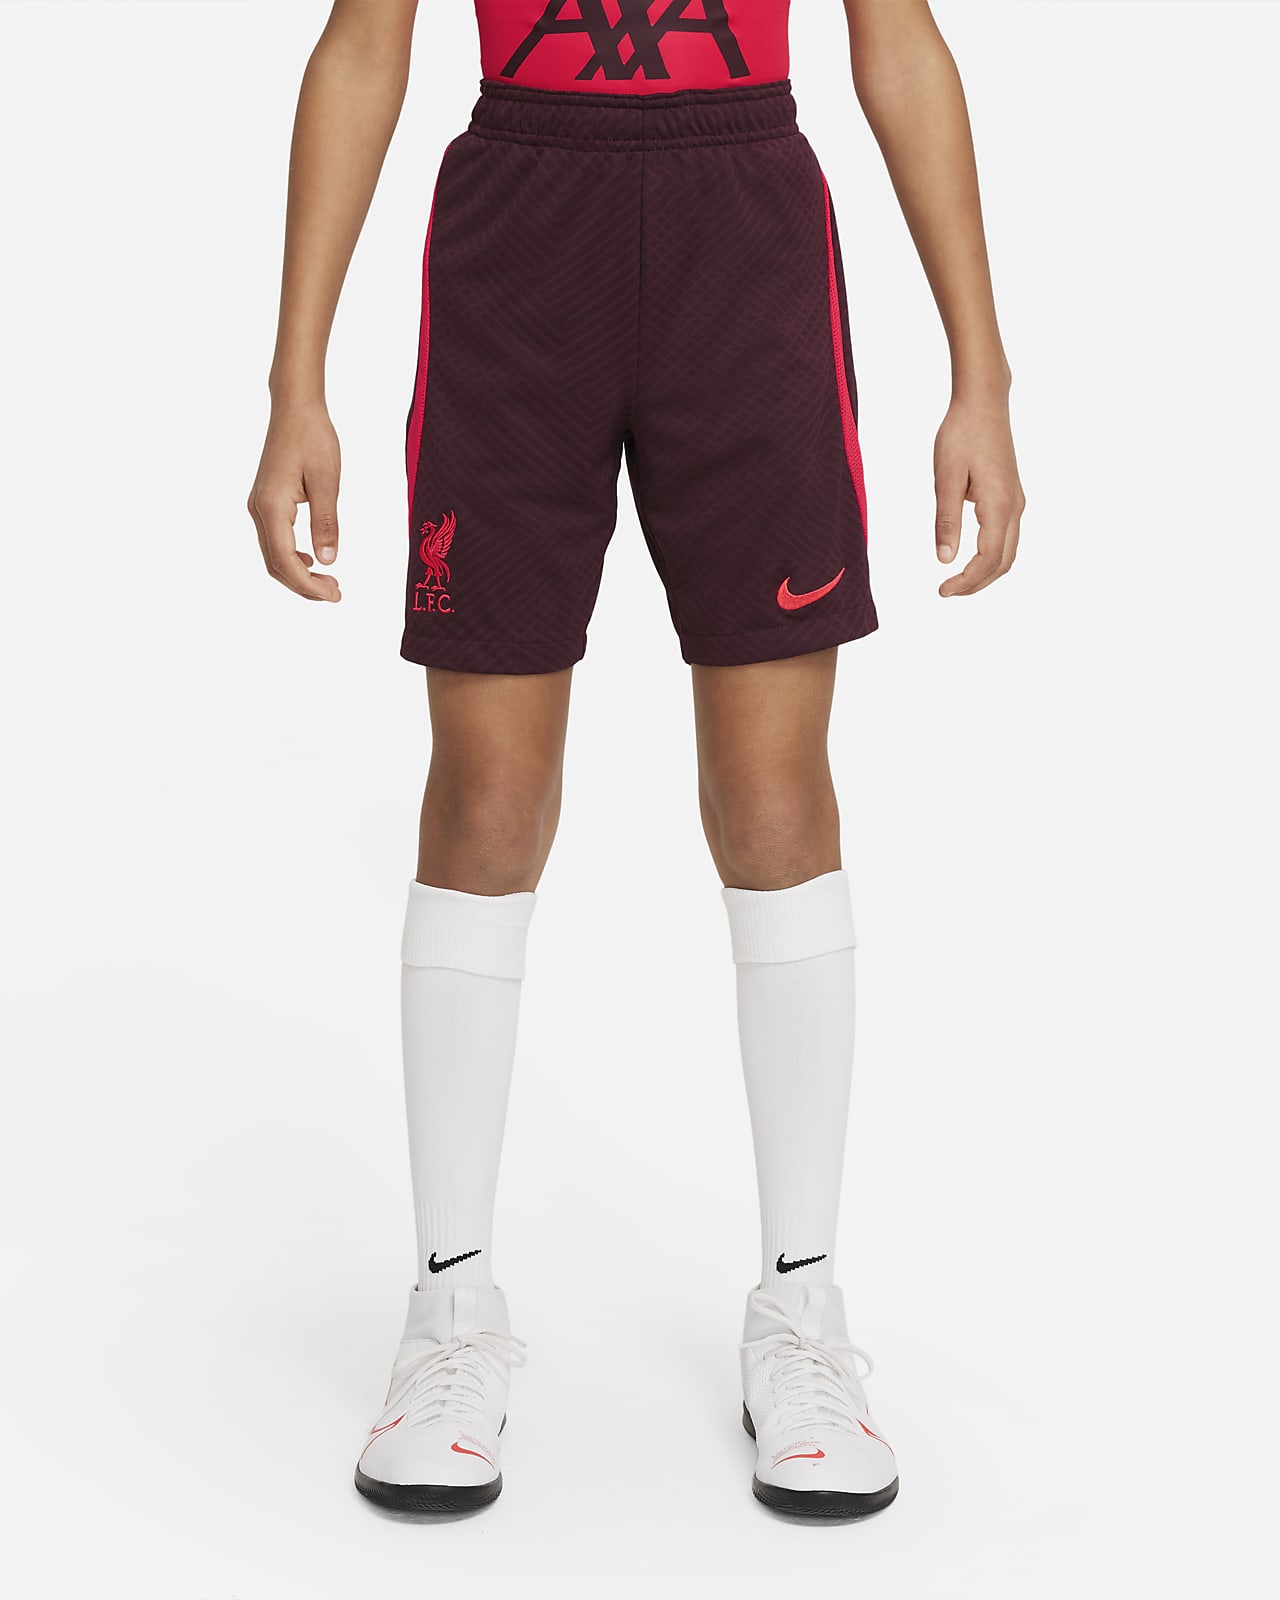 Liverpool F.C. Strike Older Kids' Nike Dri-FIT Football Shorts